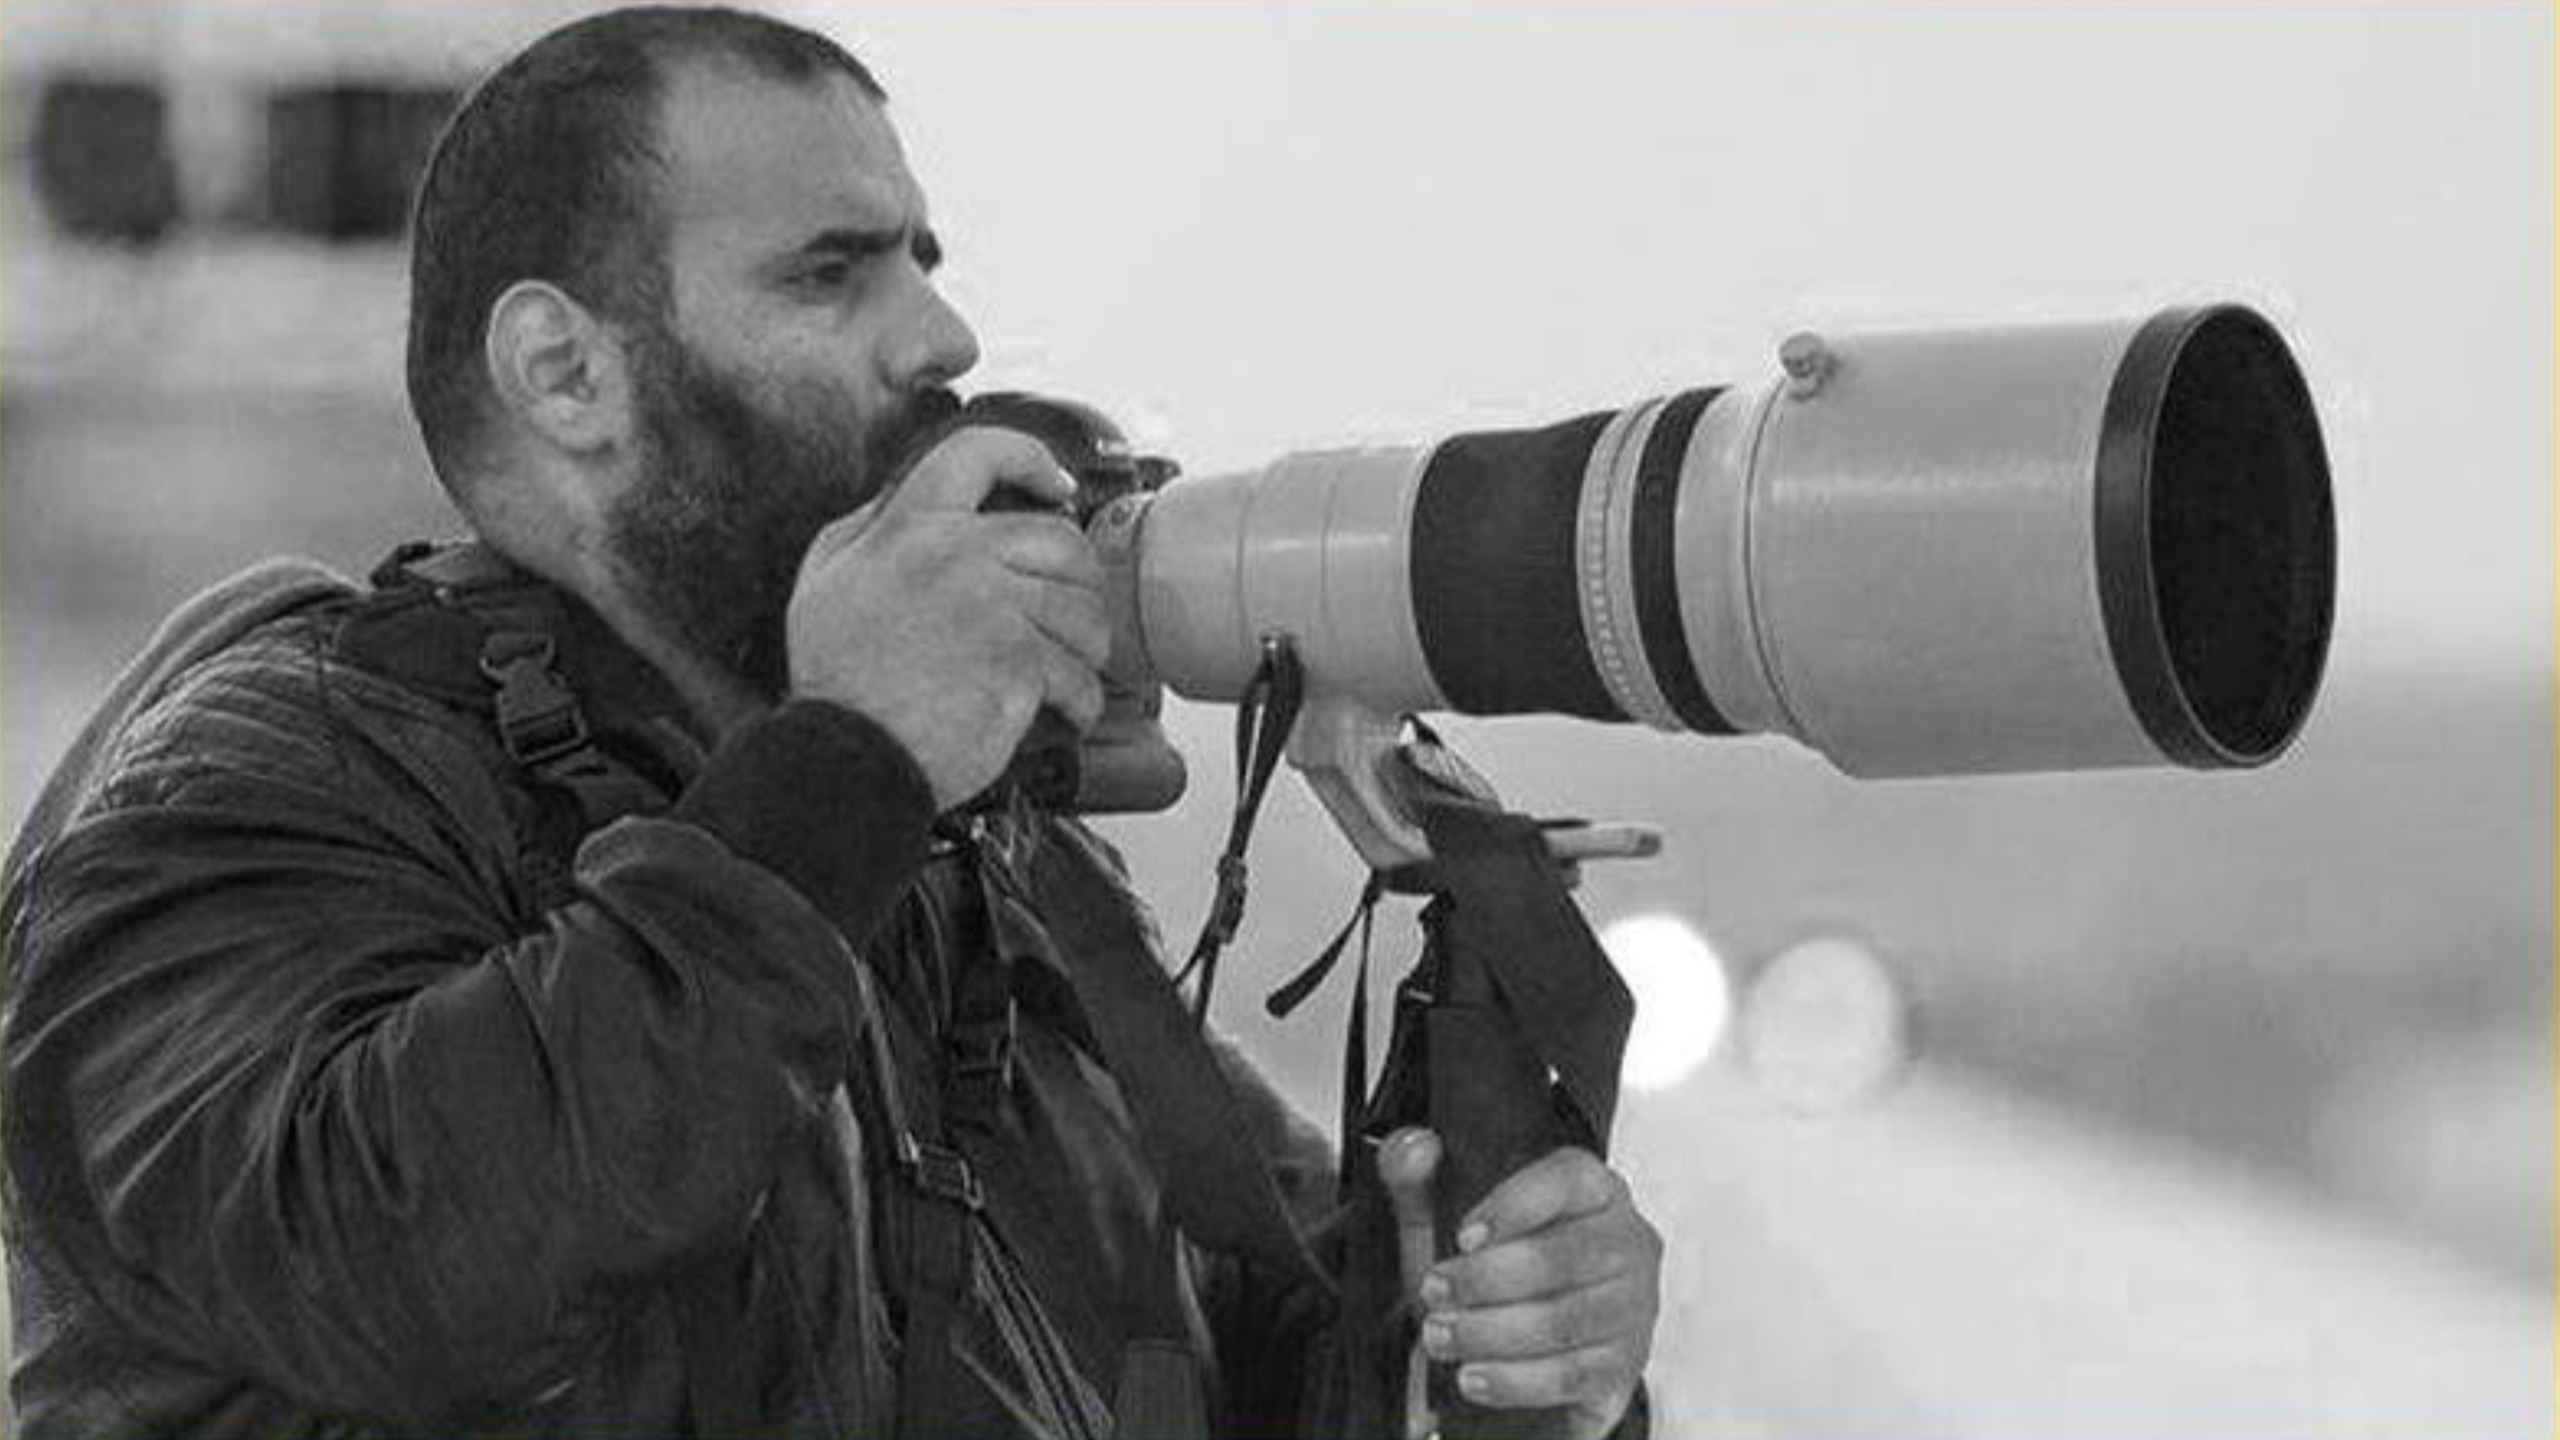 Altro dramma al Mondiale: morto un fotoreporter qatariota